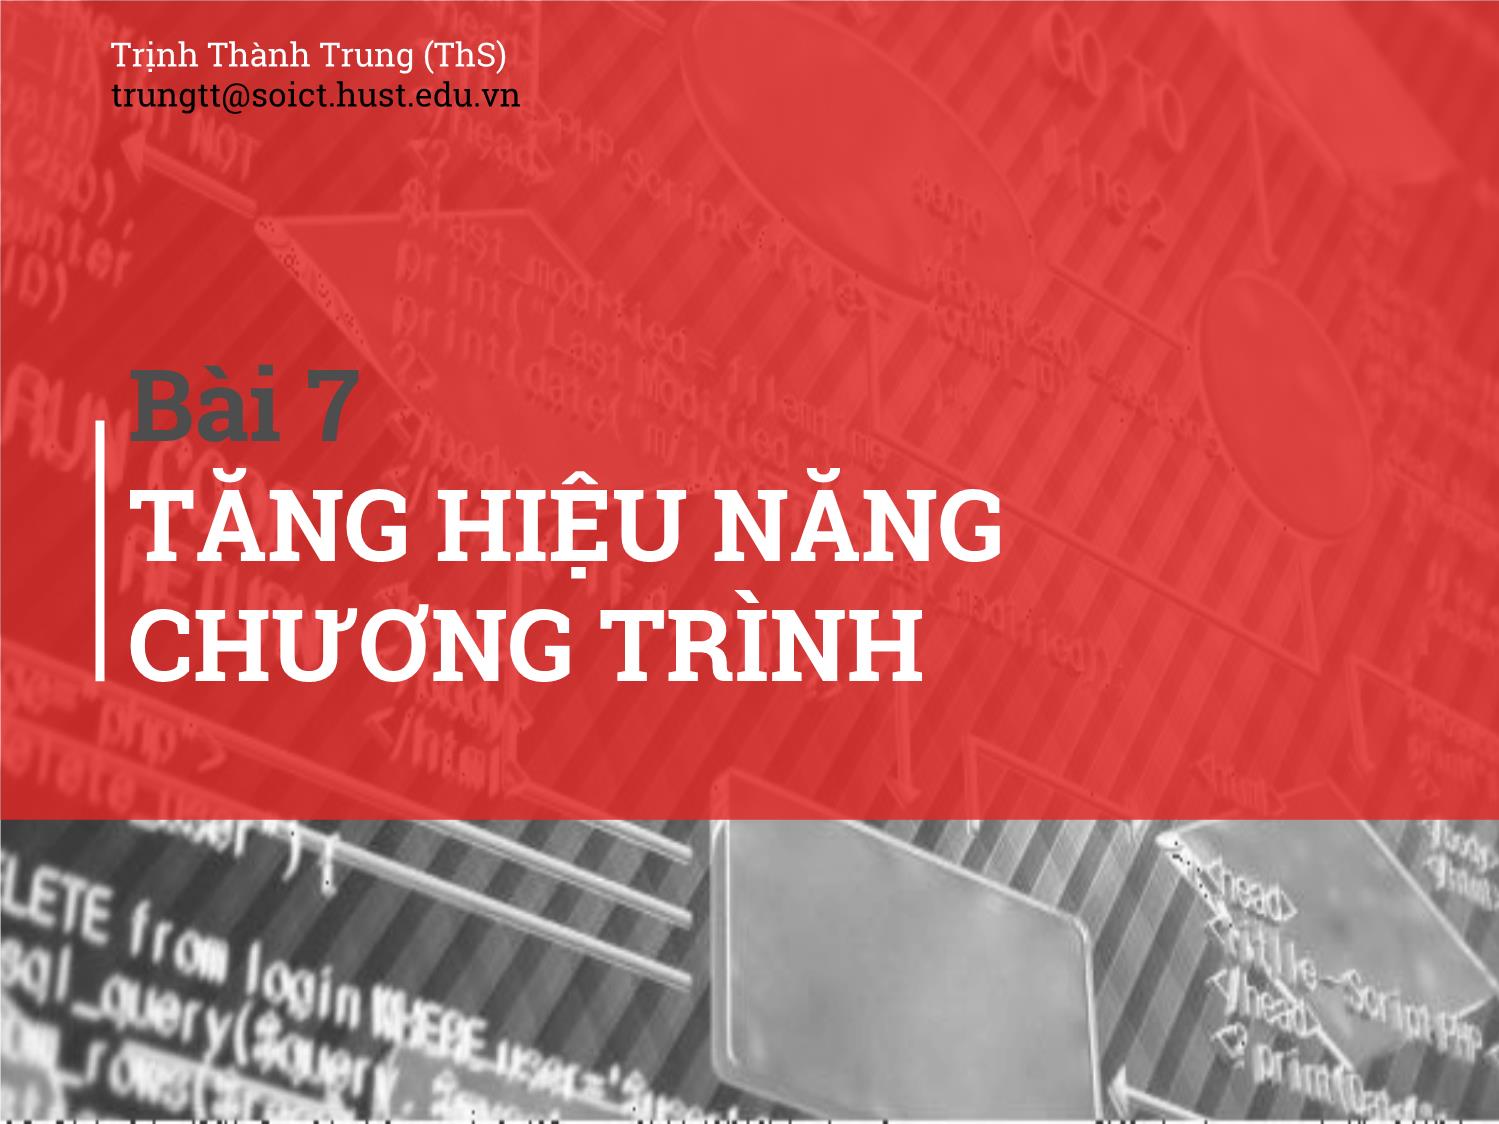 Bài giảng Kĩ thuật lập trình - Bài 7: Tăng hiệu năng chương trình - Trịnh Thành Trung trang 1